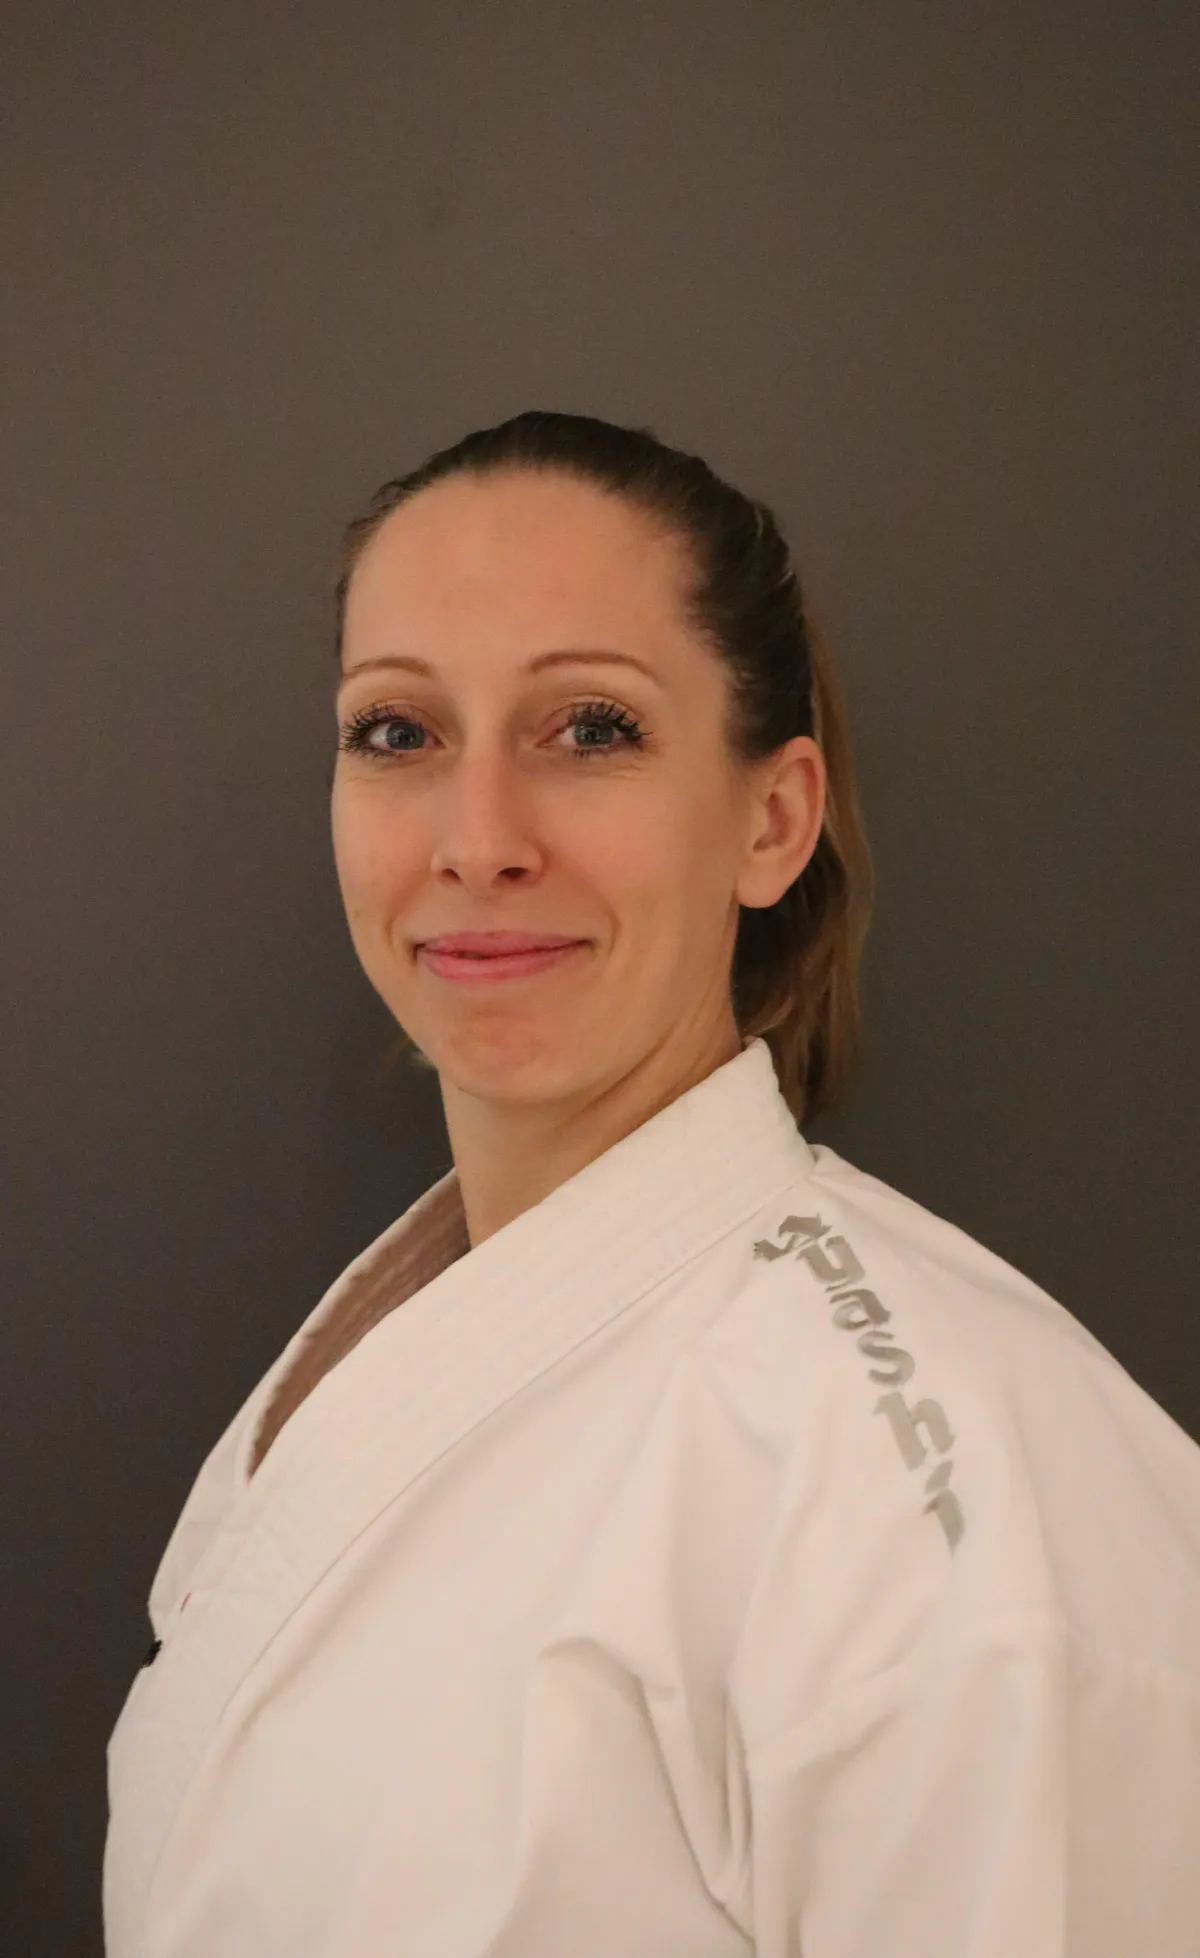 Annika Schmidt Trainer der Kampfsportschule Asia Sports Waldkraiburg.